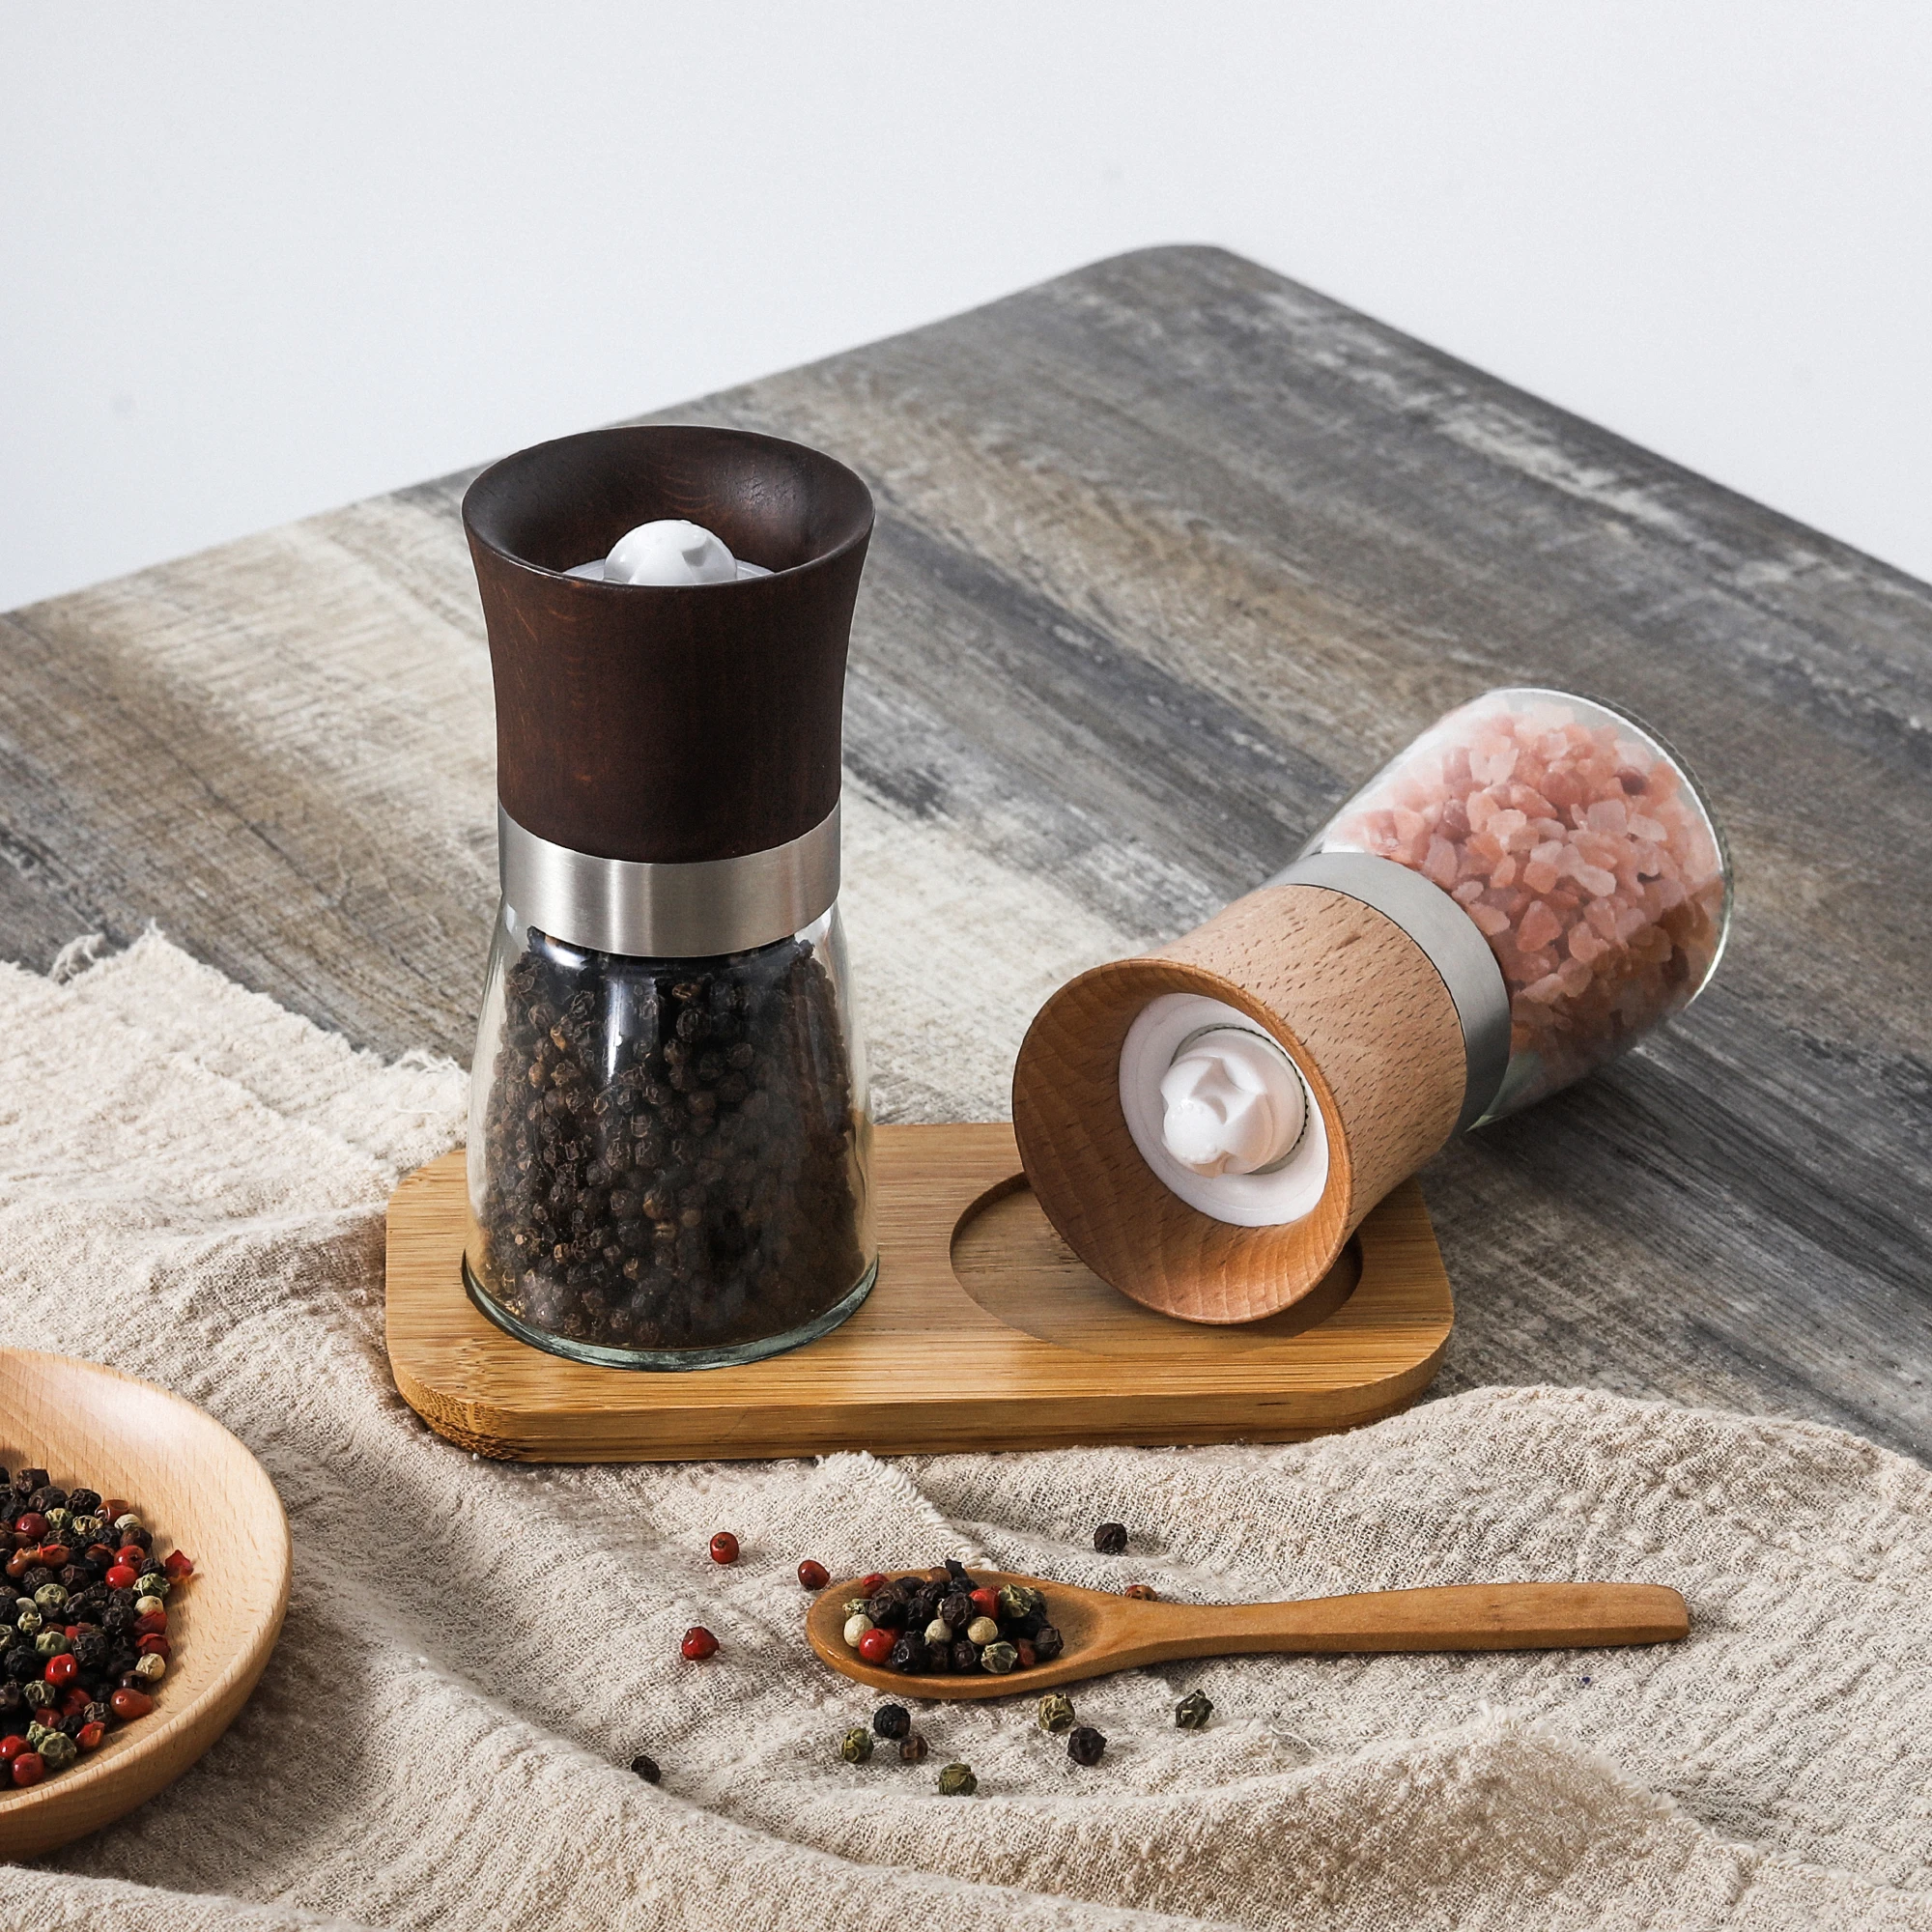 

Commercial Manual Adjustable Ceramic Burr Dry Spice and Herb Mills Grinder Salt and Pepper Grinder Set